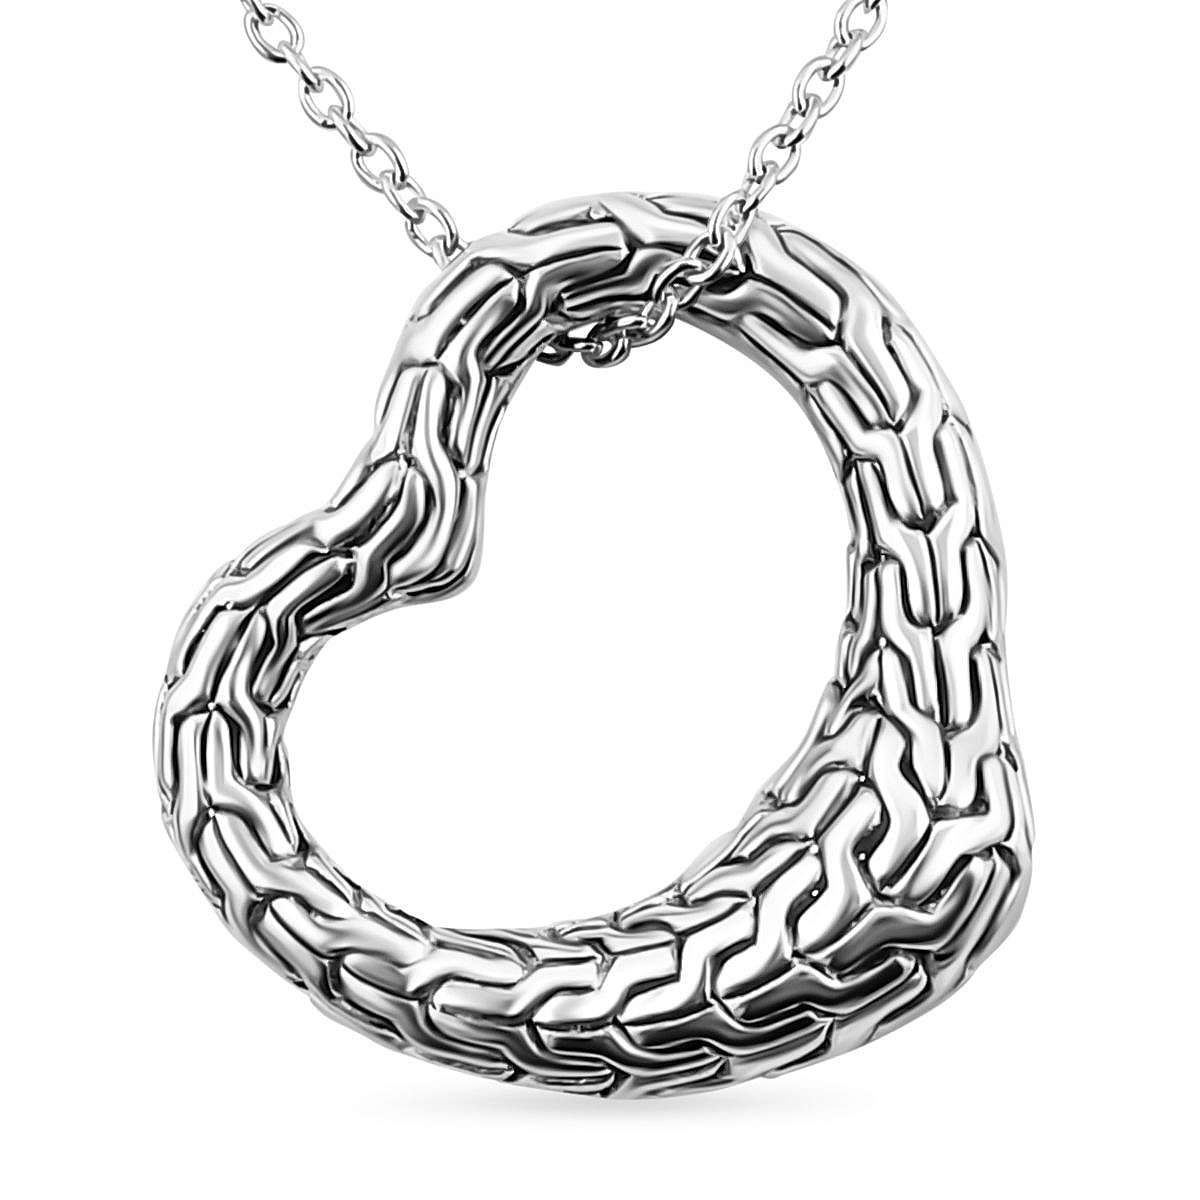 Royal Bali - Handmade Sterling Silver Heart Tulang Naga Pendant with Chain (Size 20)